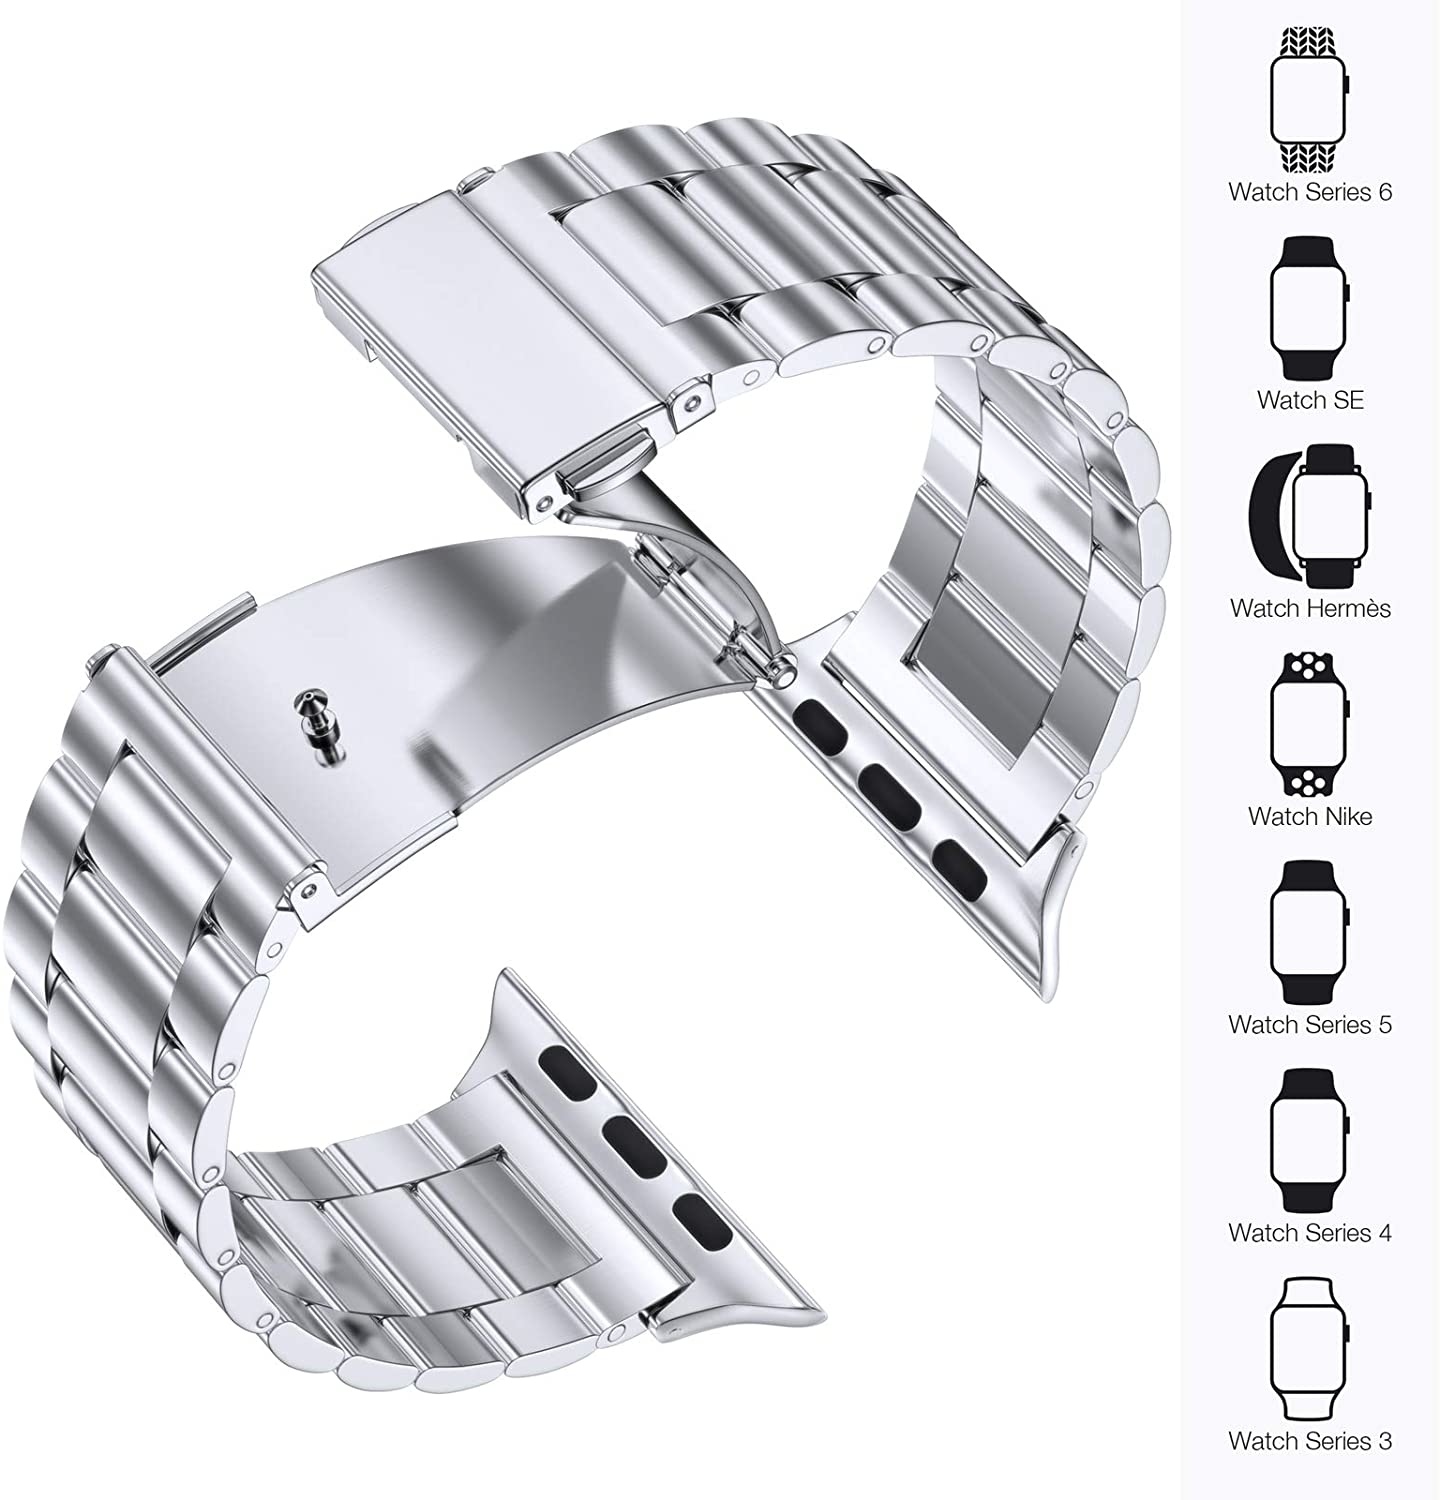 Apple Watch Beads Steel Link Strap - Silver